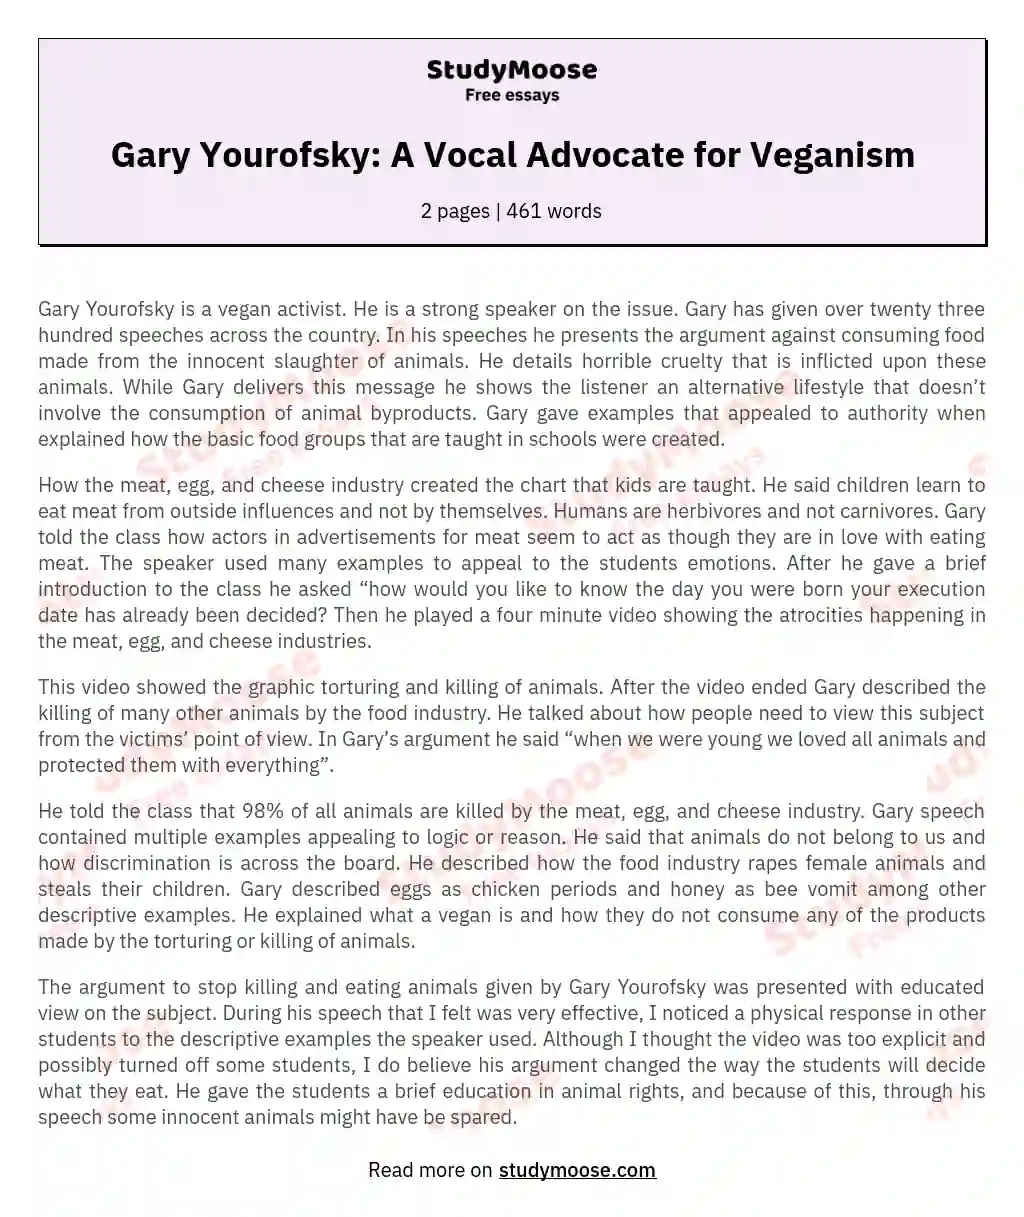 Gary Yourofsky: A Vocal Advocate for Veganism